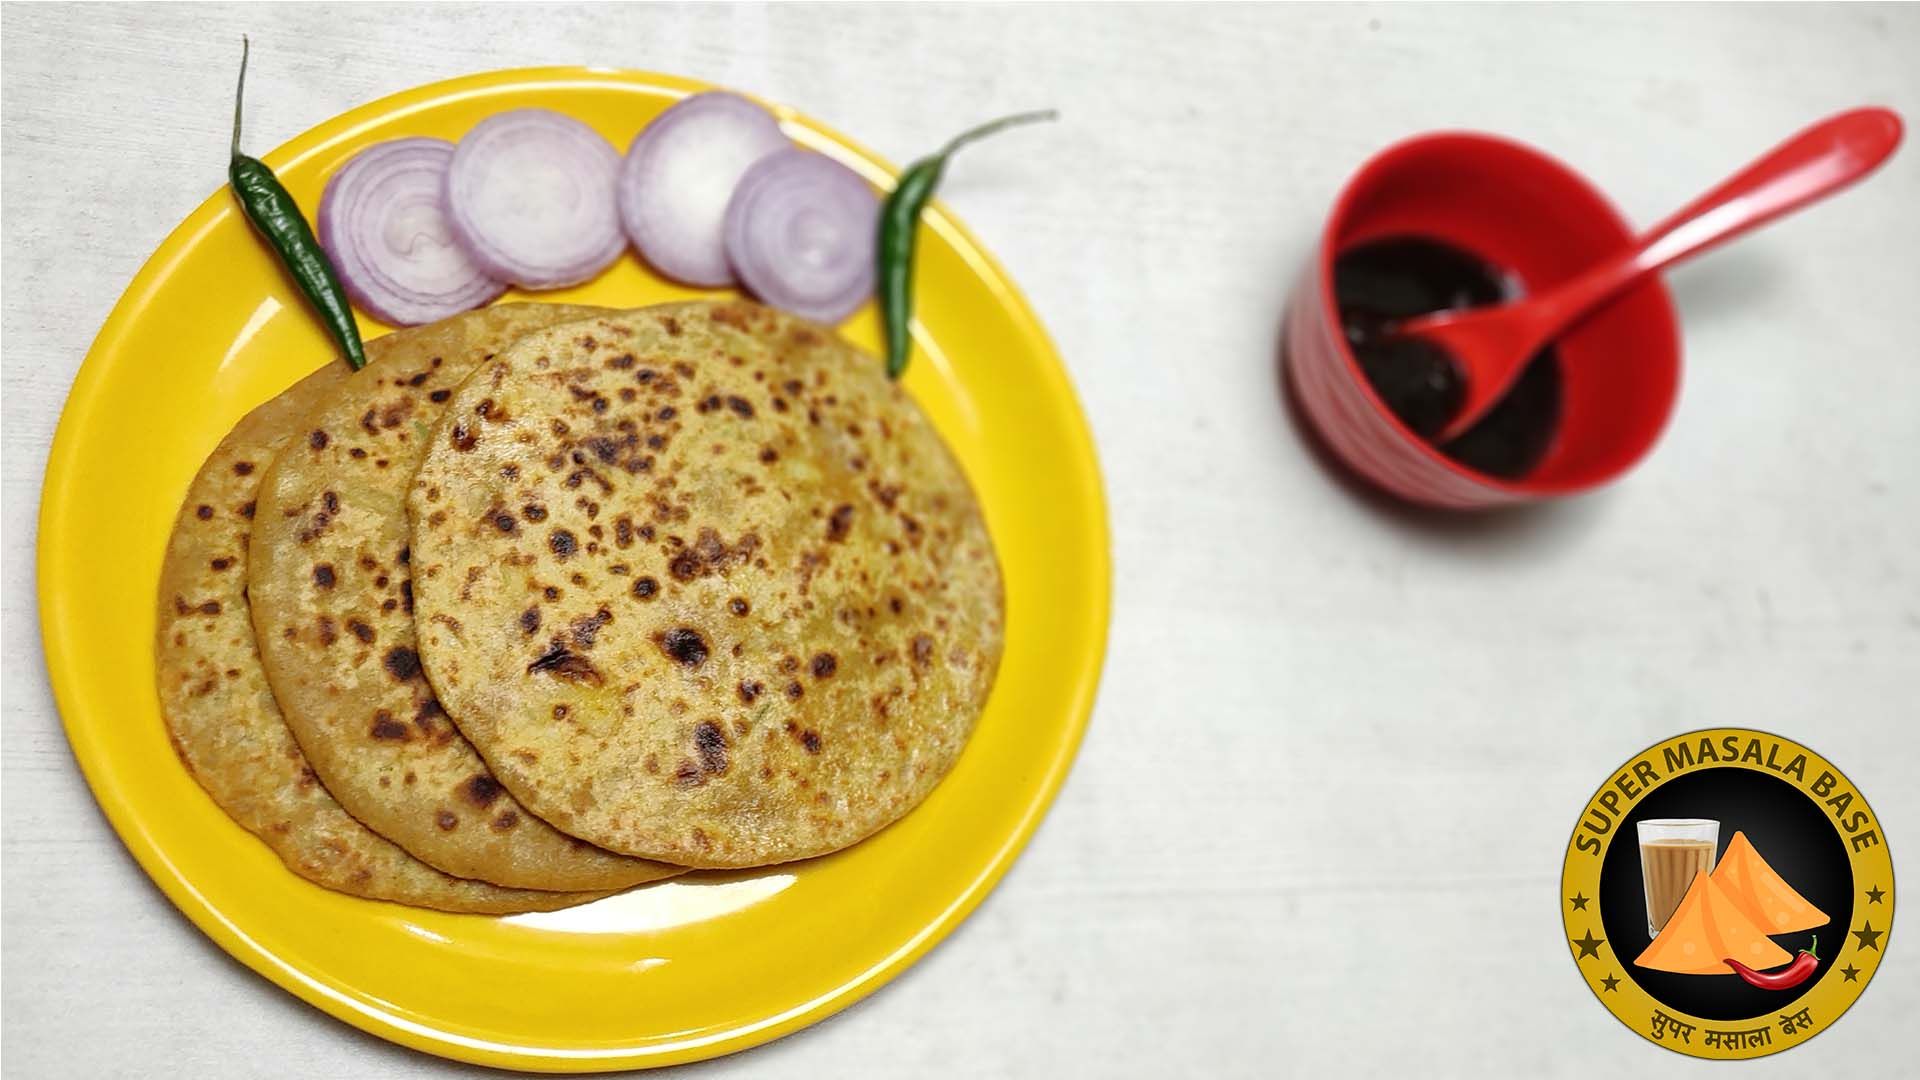 punjabi style potato stuffed aloo paratha in yellow plate